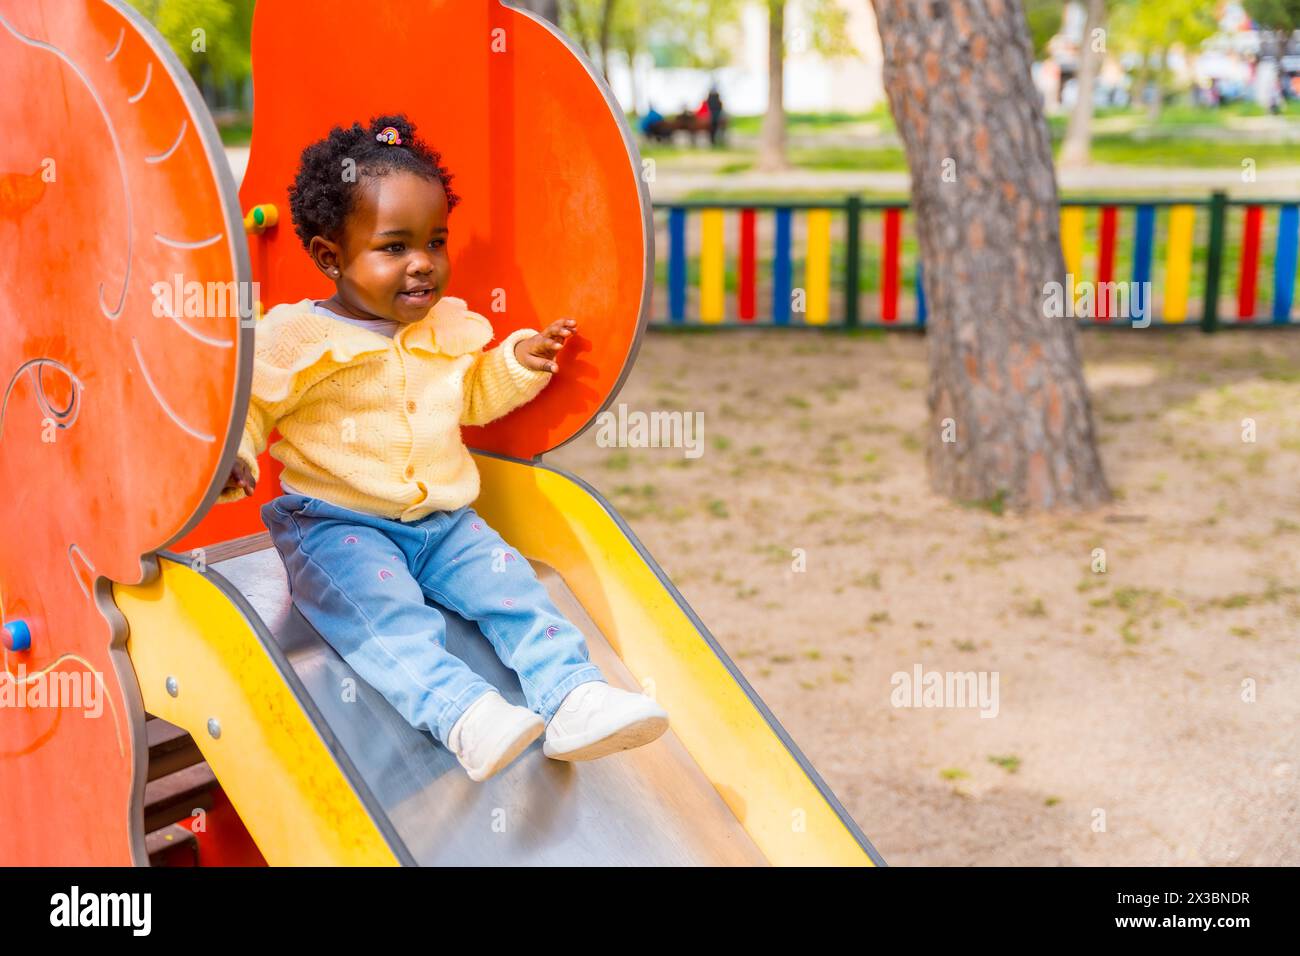 Afrikanisches Mädchen spielt auf einer Rutsche auf einem öffentlichen Spielplatz Stockfoto